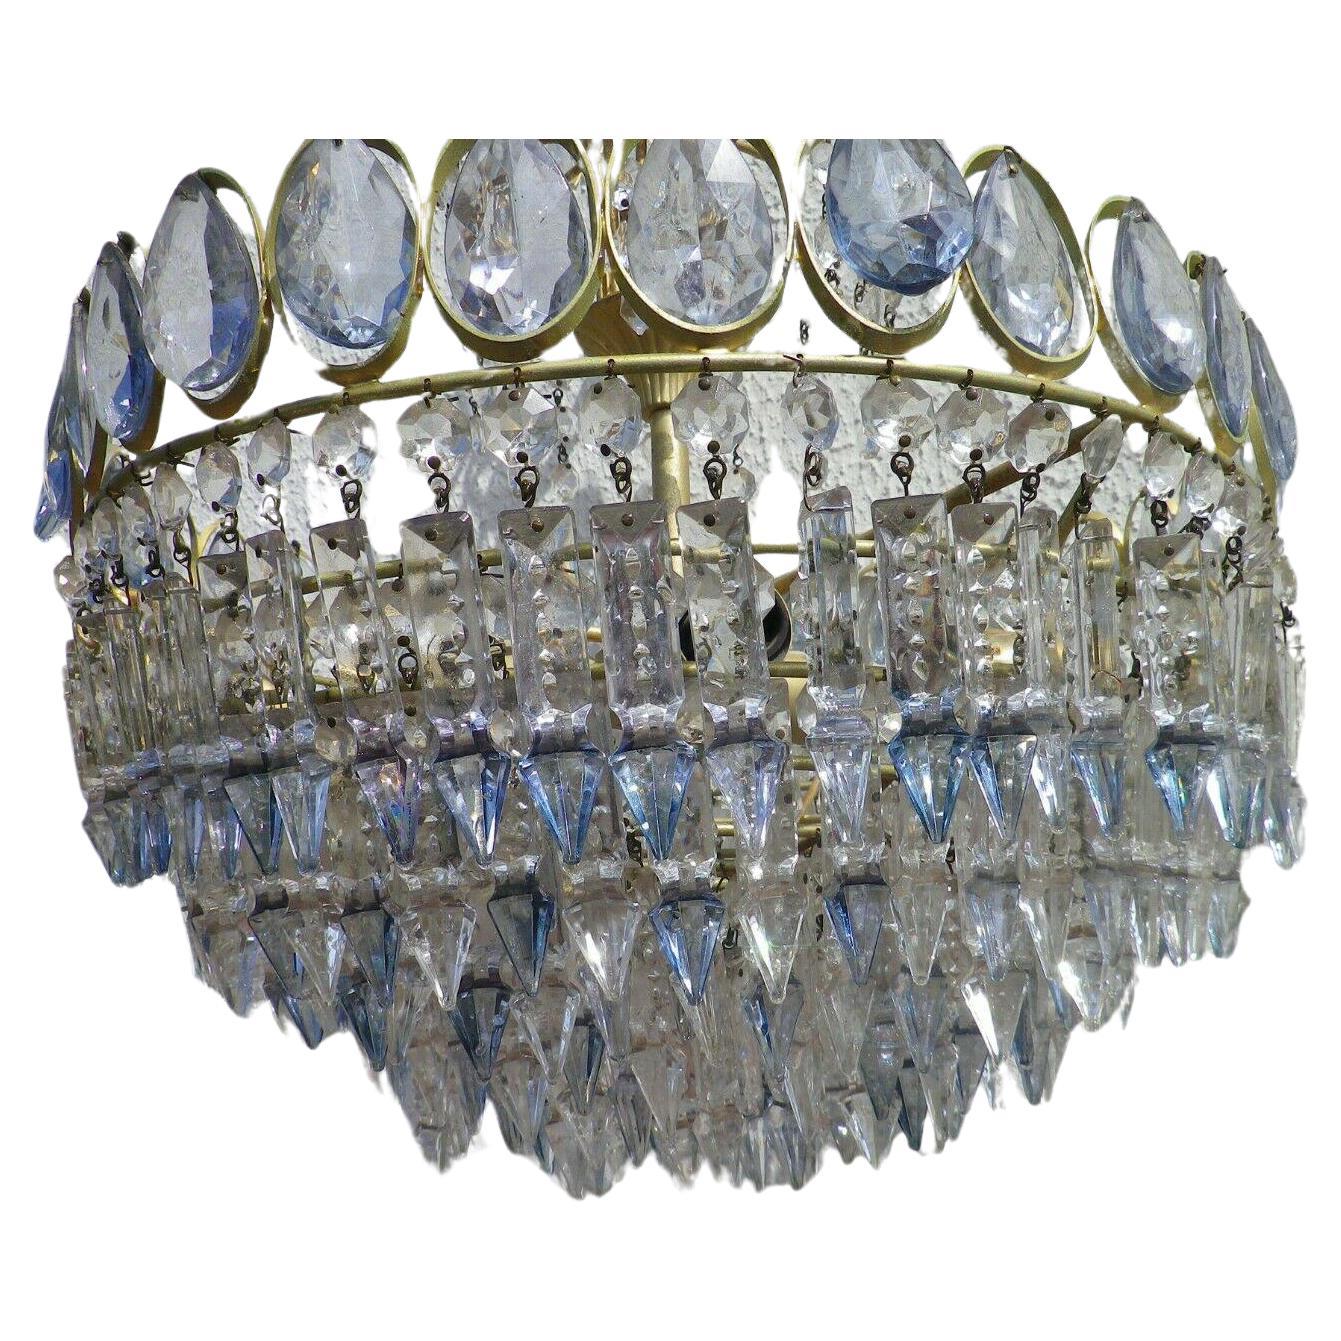 c1960's Austrian Mid Century Modern Cut Crystal Chandelier in Pale Blue Crystal. Voll mit vielen Ebenen von Crystal. 